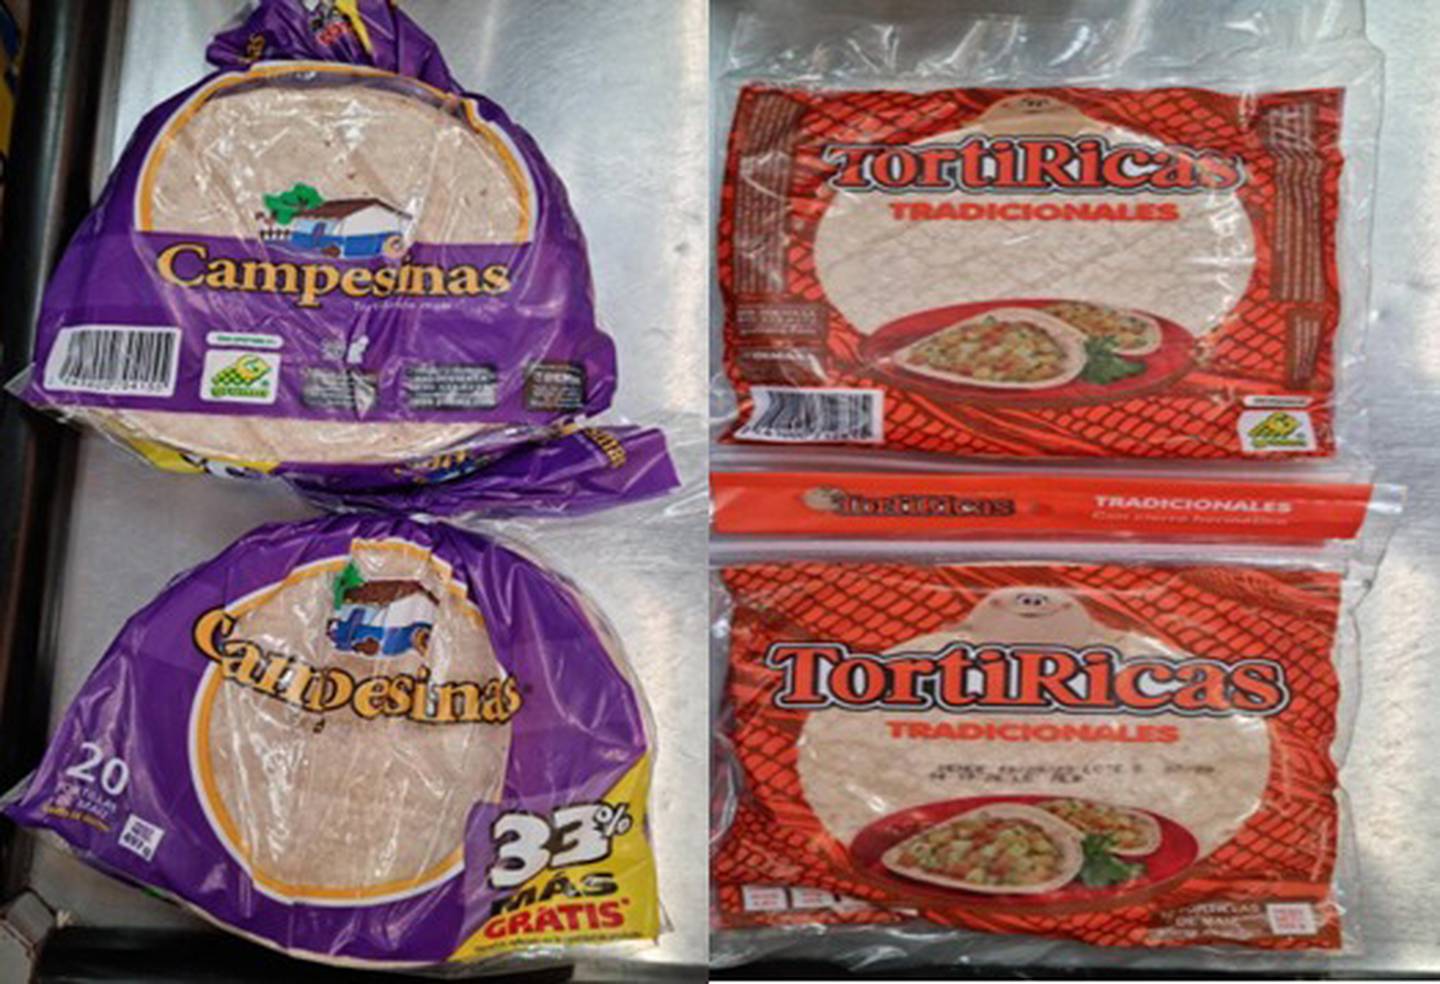 Estos son los lotes analizados de las tortillas de maíz TortiRicas Tradicionales, y las tortillas de maíz Campesinas. Foto: (Salud)